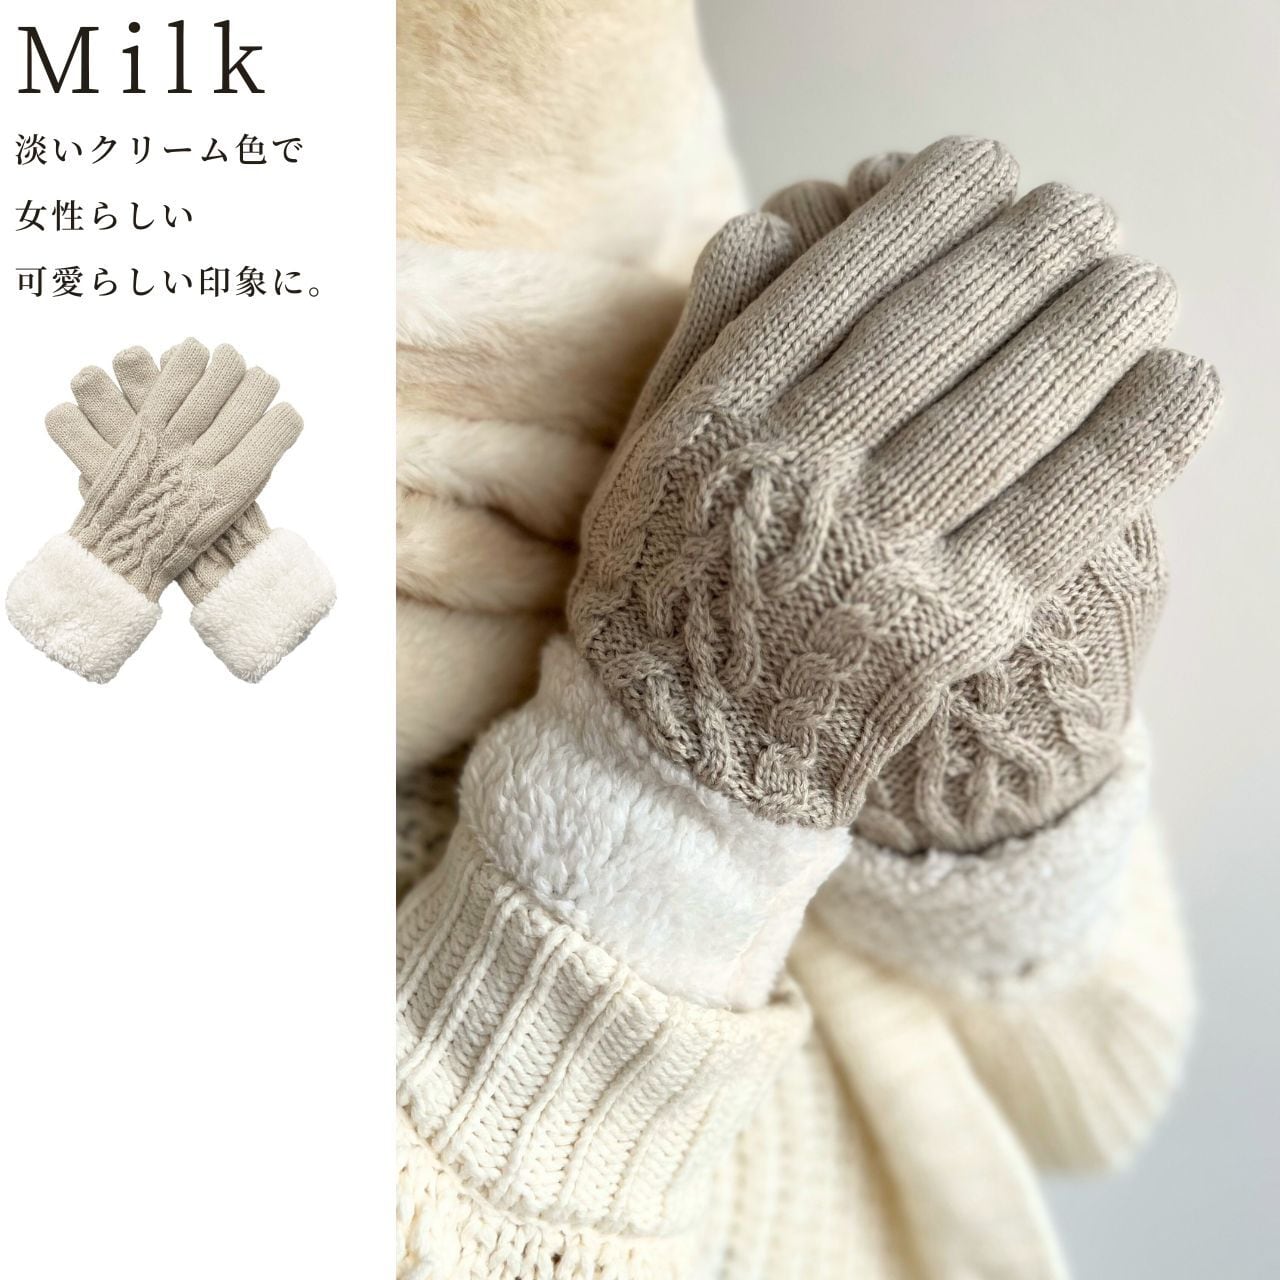 【新品タグ付き】MILK ミルク party is over ワンピース+手袋